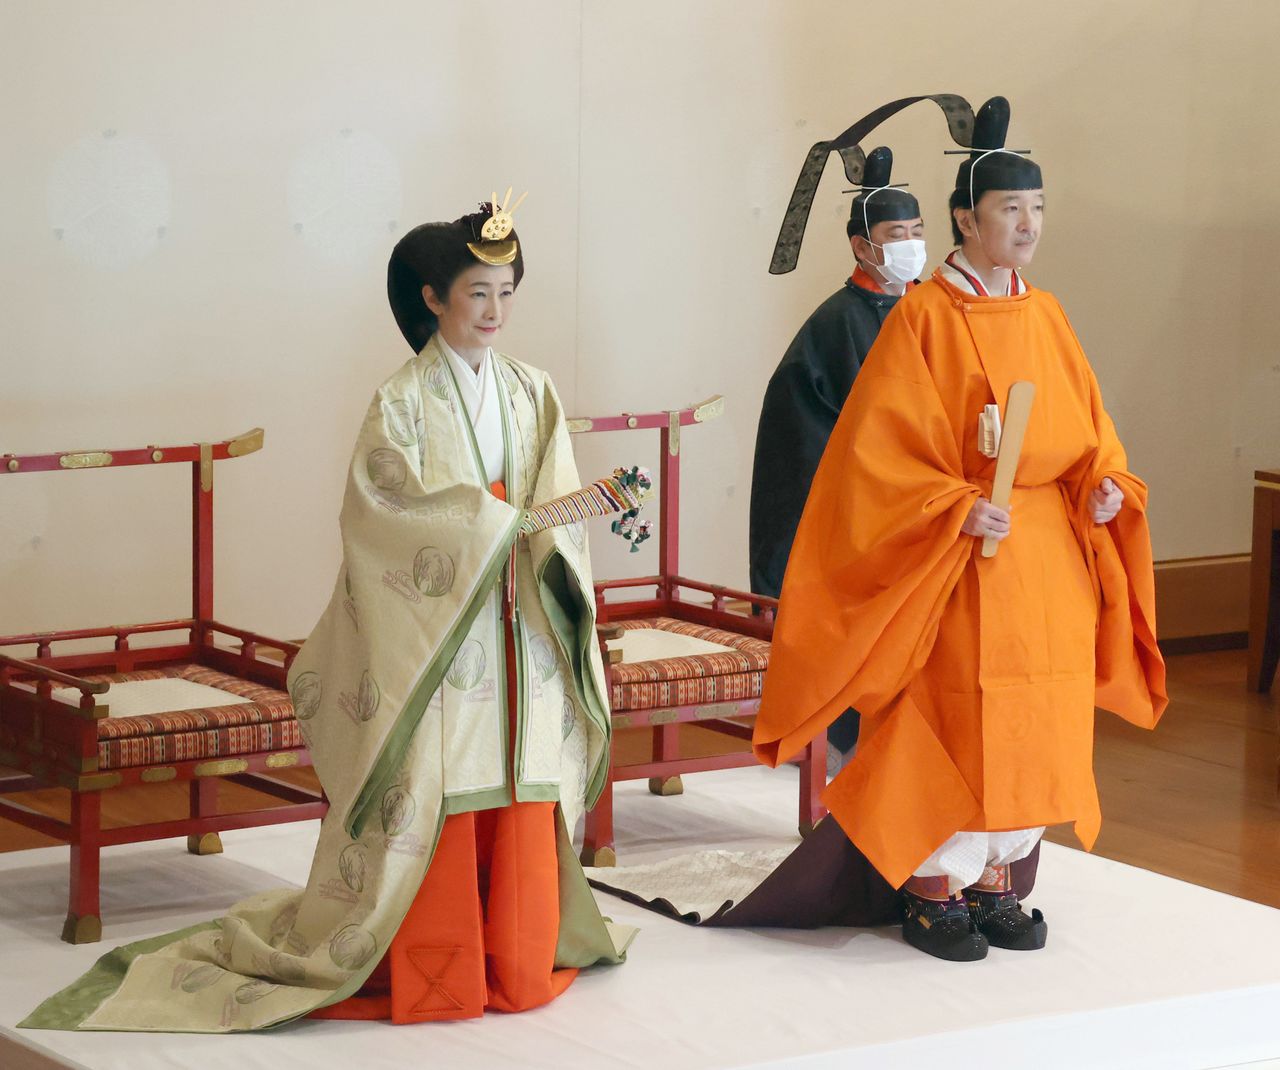 Le couple princier d’Akishino durant la cérémonie de proclamation du prince héritier, le 8 novembre 2020 dans la salle des pins du palais impérial (photo de pool, Jiji)